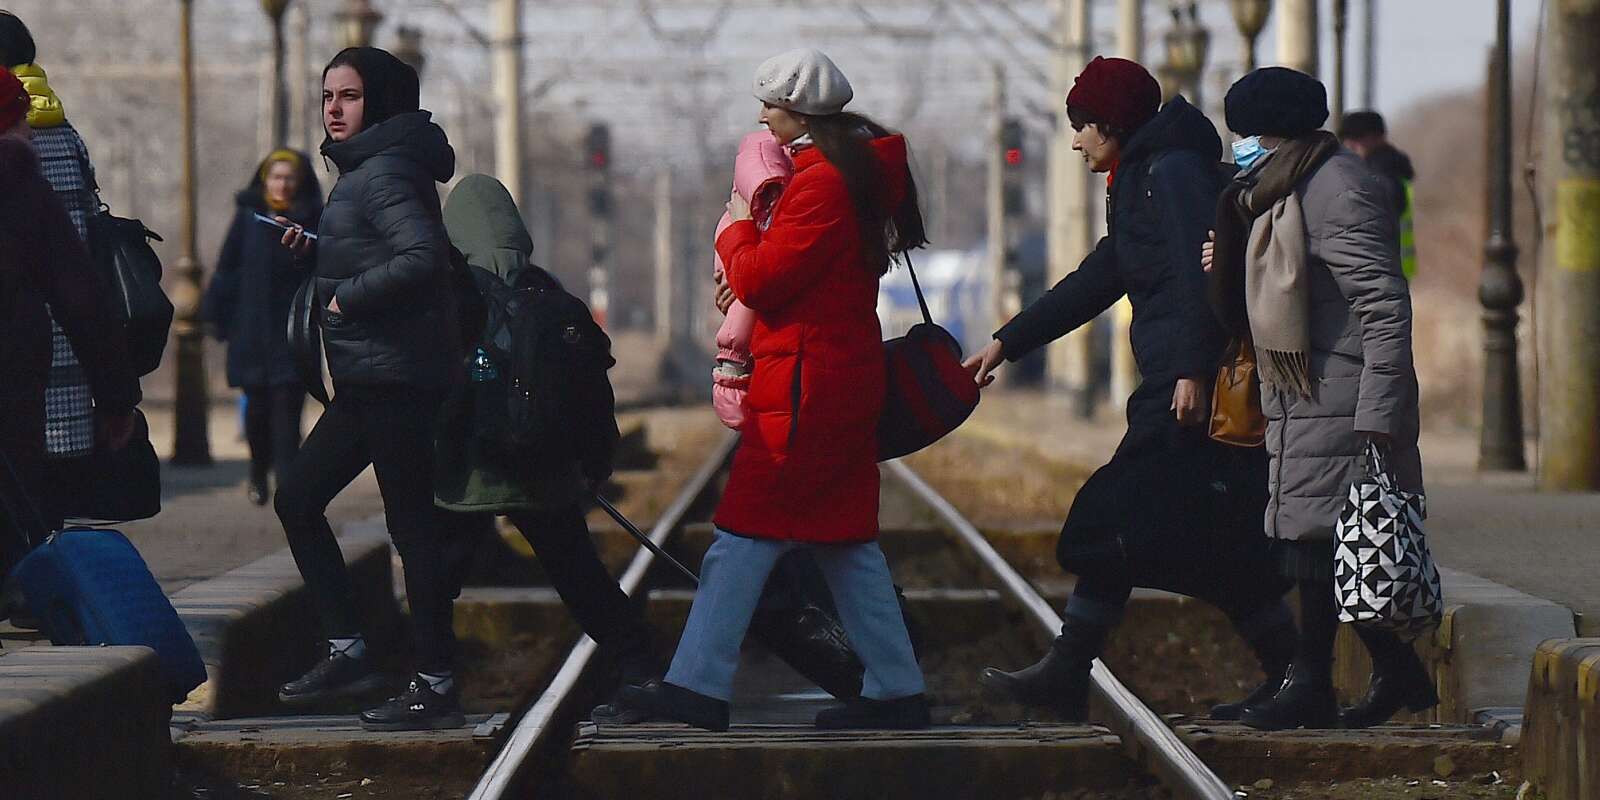 Une mère réfugiée tient son bébé dans ses bras alors qu’elles traversent les voies ferrées pour monter dans un train à destination de Bucarest à la gare de Suceava, après avoir fui l’Ukraine vers le poste frontière de Siret en Roumanie, suite à l’invasion de l’Ukraine par la Russie, à Suceava, en Roumanie, le 17 mars 2022.